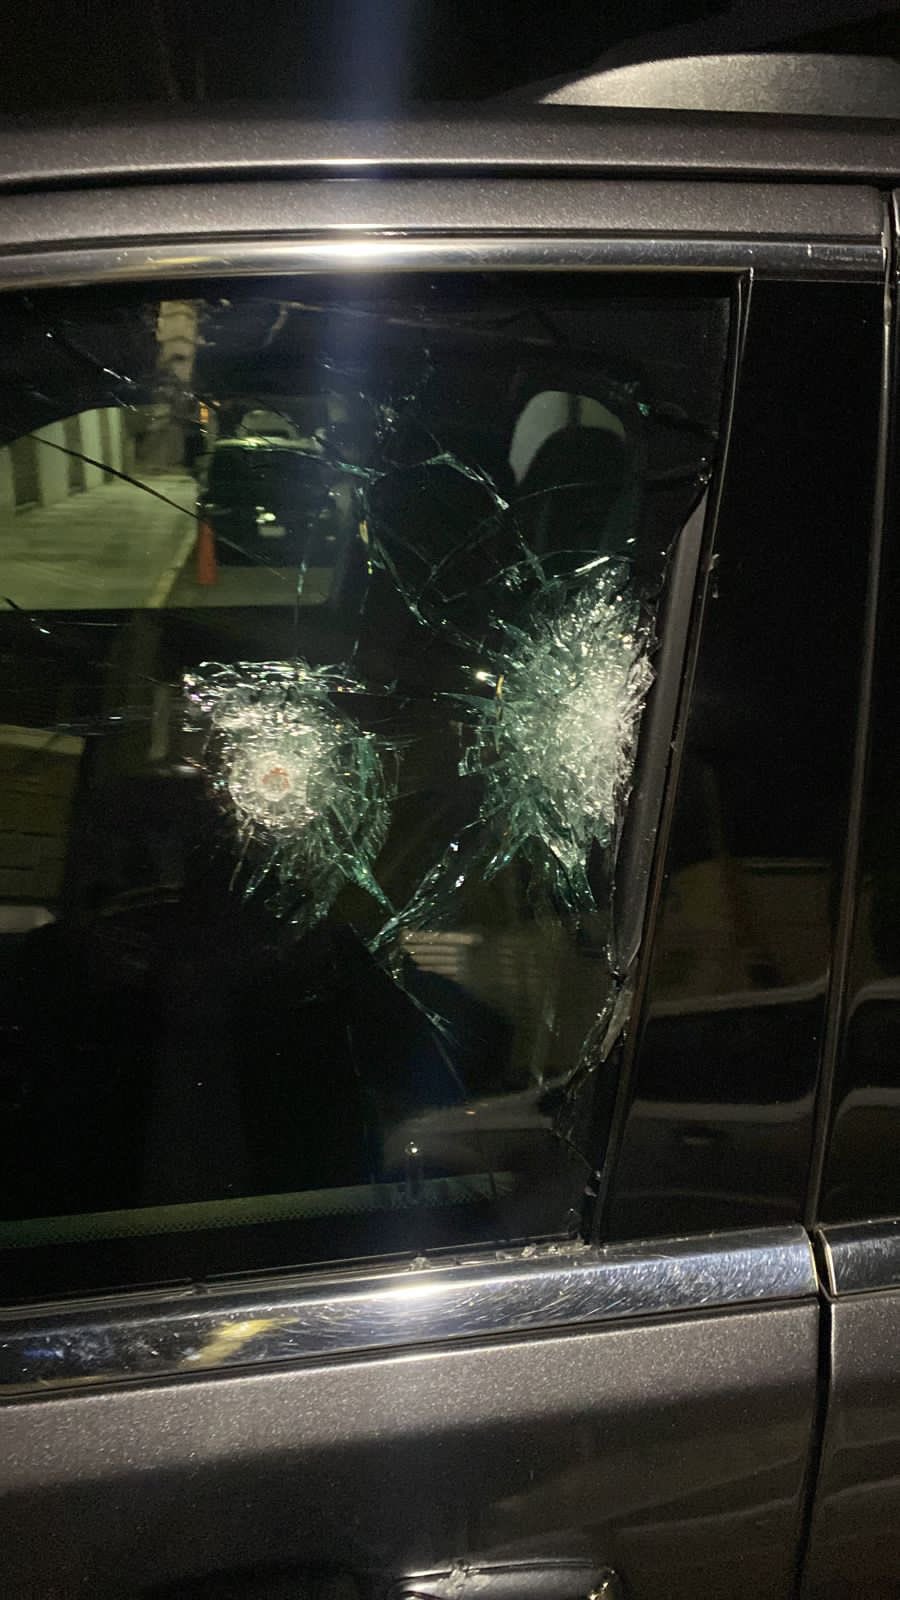 Impactos de bala marcados en la camioneta del periodista Ciro Gómez Leyva (CGL)